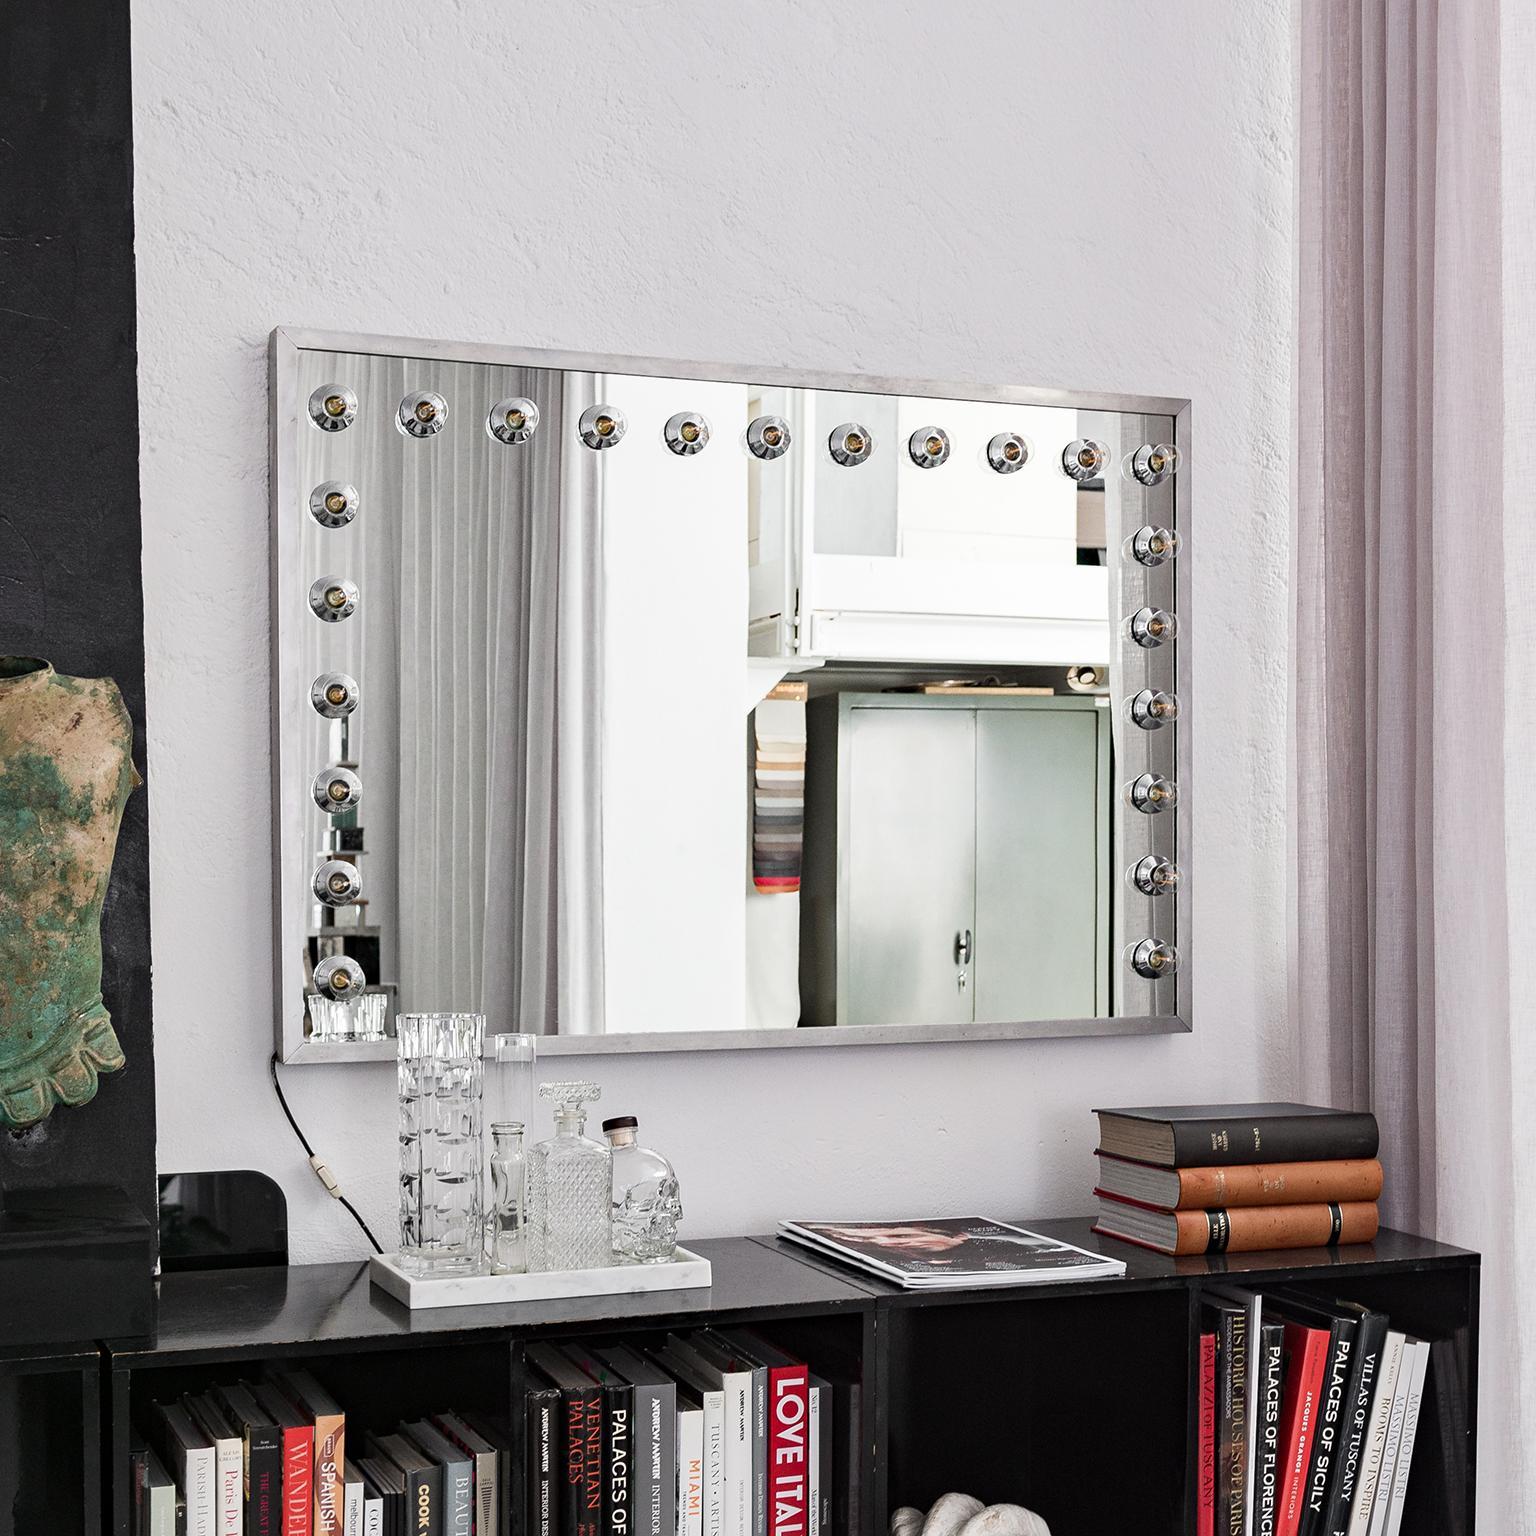 Angeboten wird ein italienischer Kosmetikspiegel im Vintage-Stil, wahrscheinlich aus den 1970er Jahren, mit 23 Lichtern, die an drei Kanten des Spiegels angebracht sind. Es ist sehr groß und in sehr gutem Zustand erhalten. Es ist eine sehr coole und